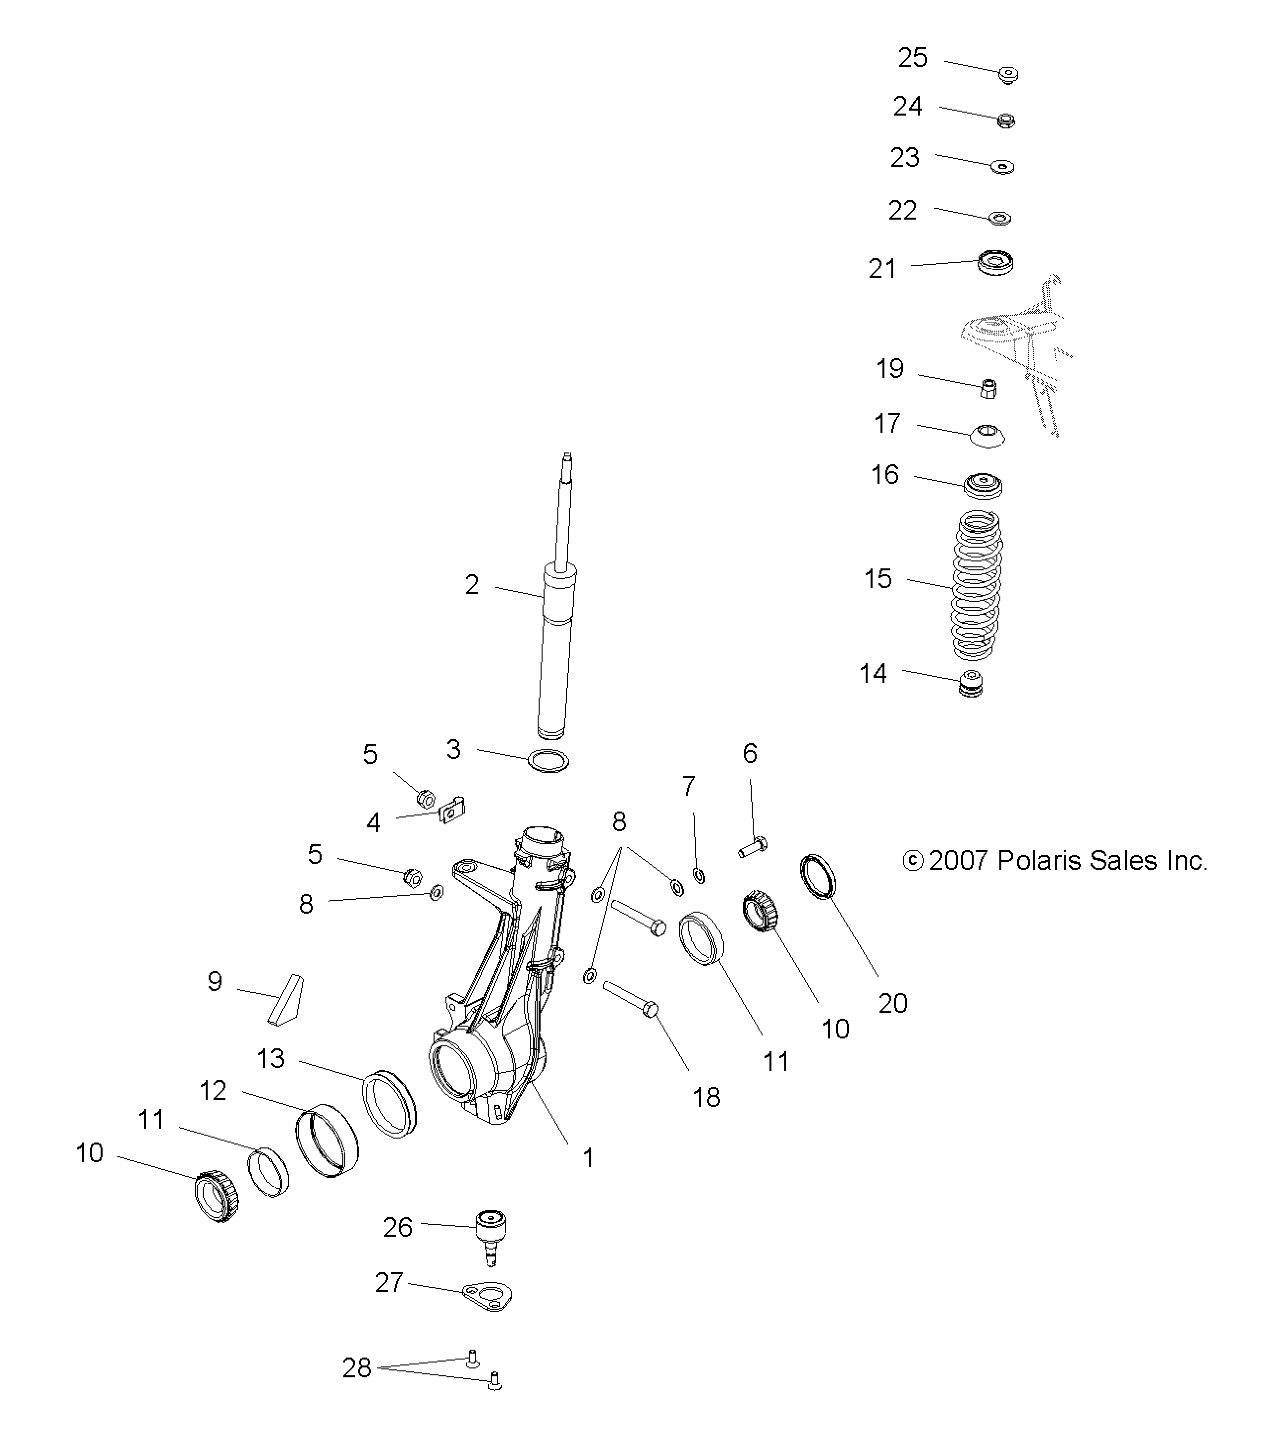 Foto diagrama Polaris que contem a peça 7041603-216